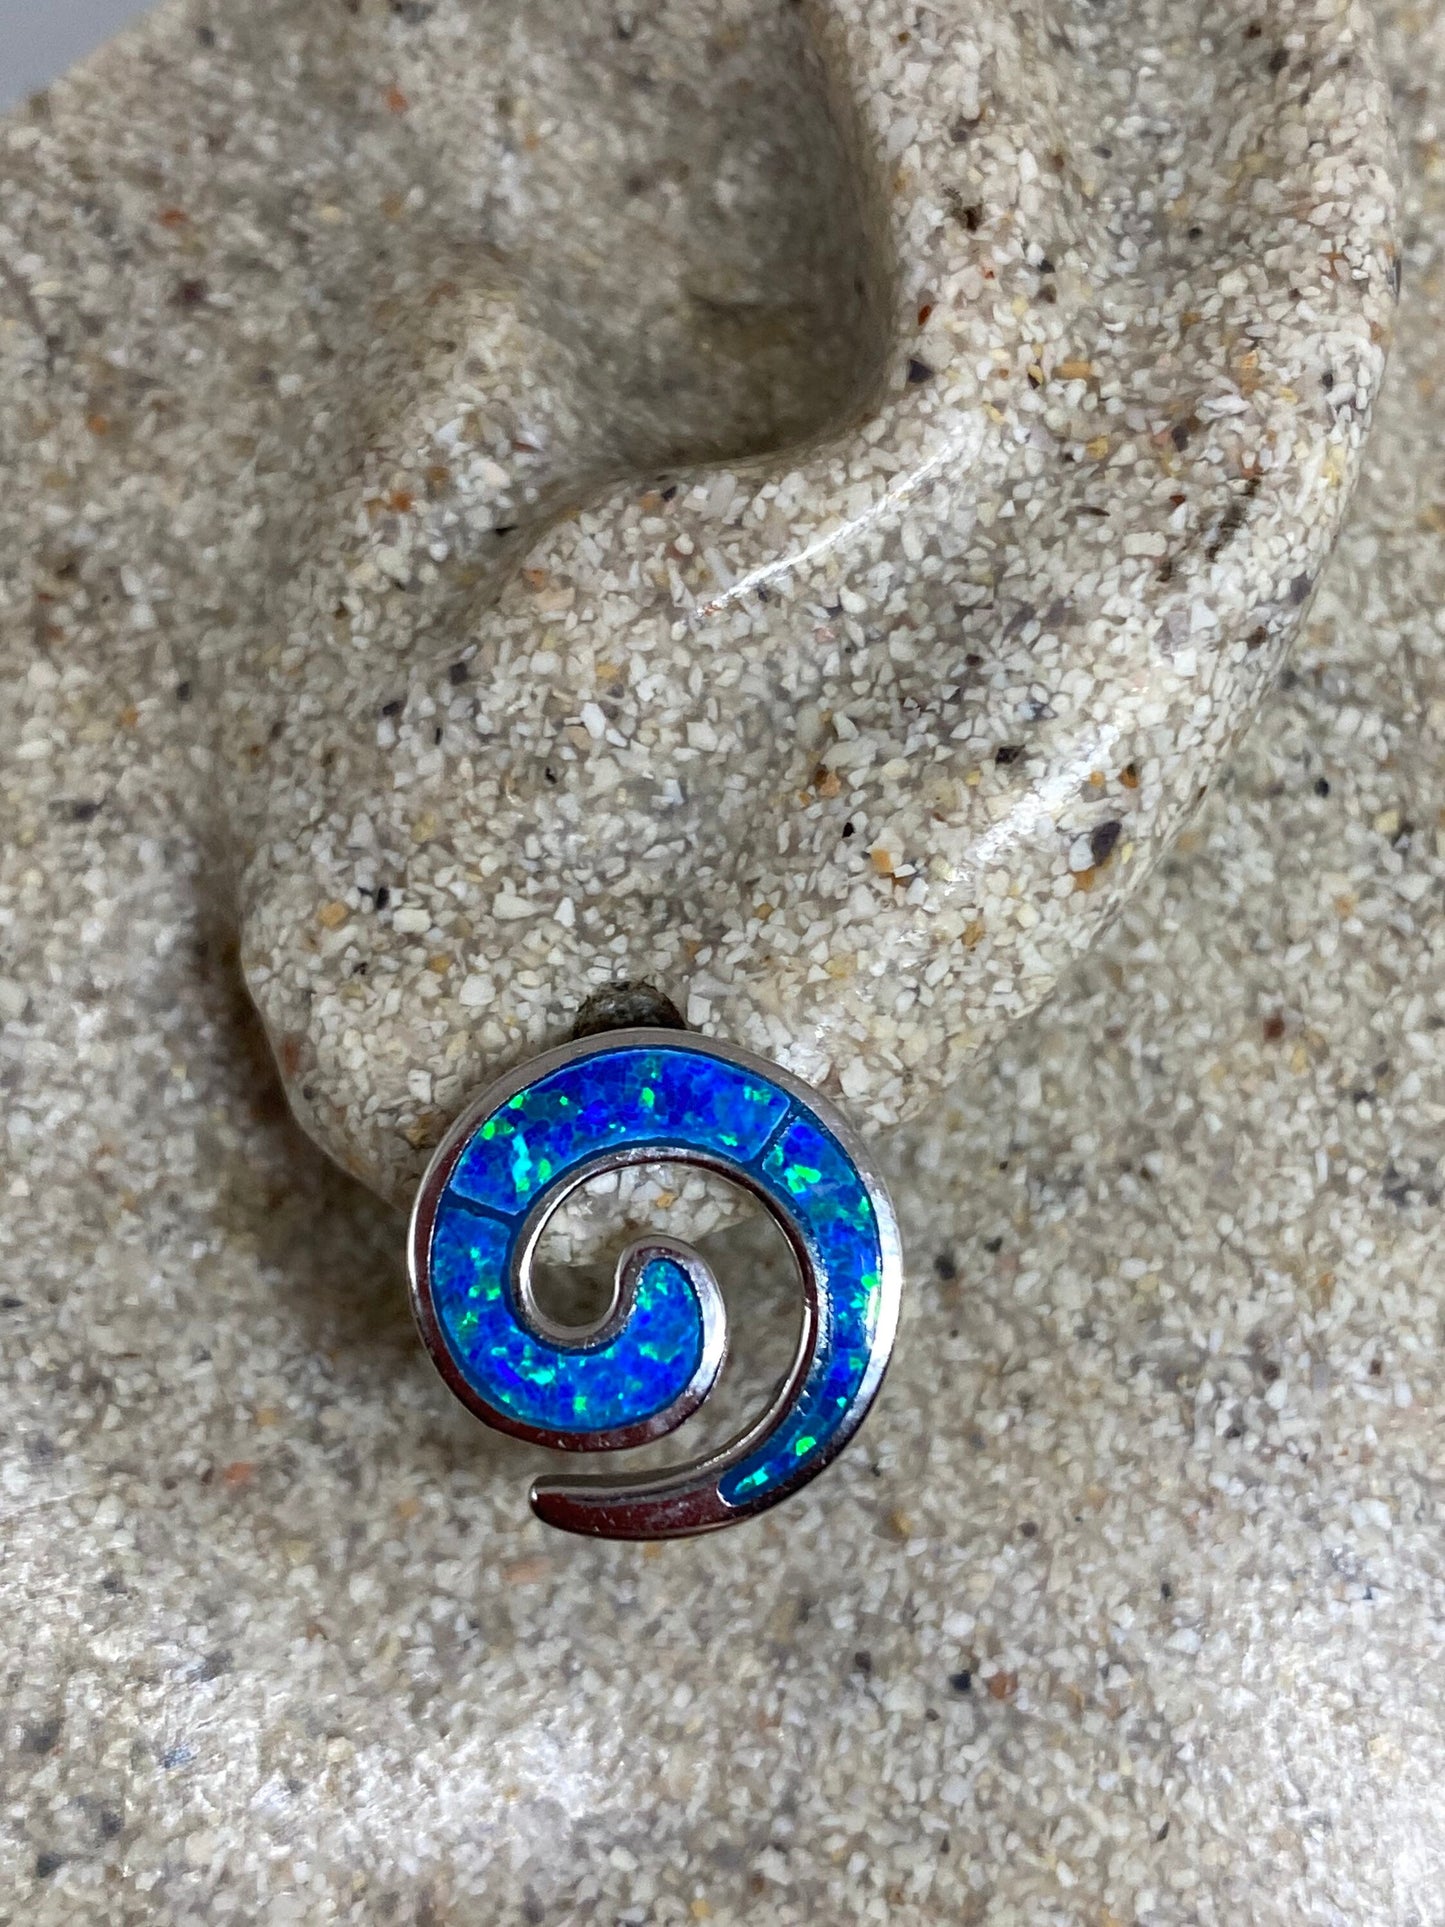 Vintage Blue Opal Earrings 925 Sterling Silver Stud button